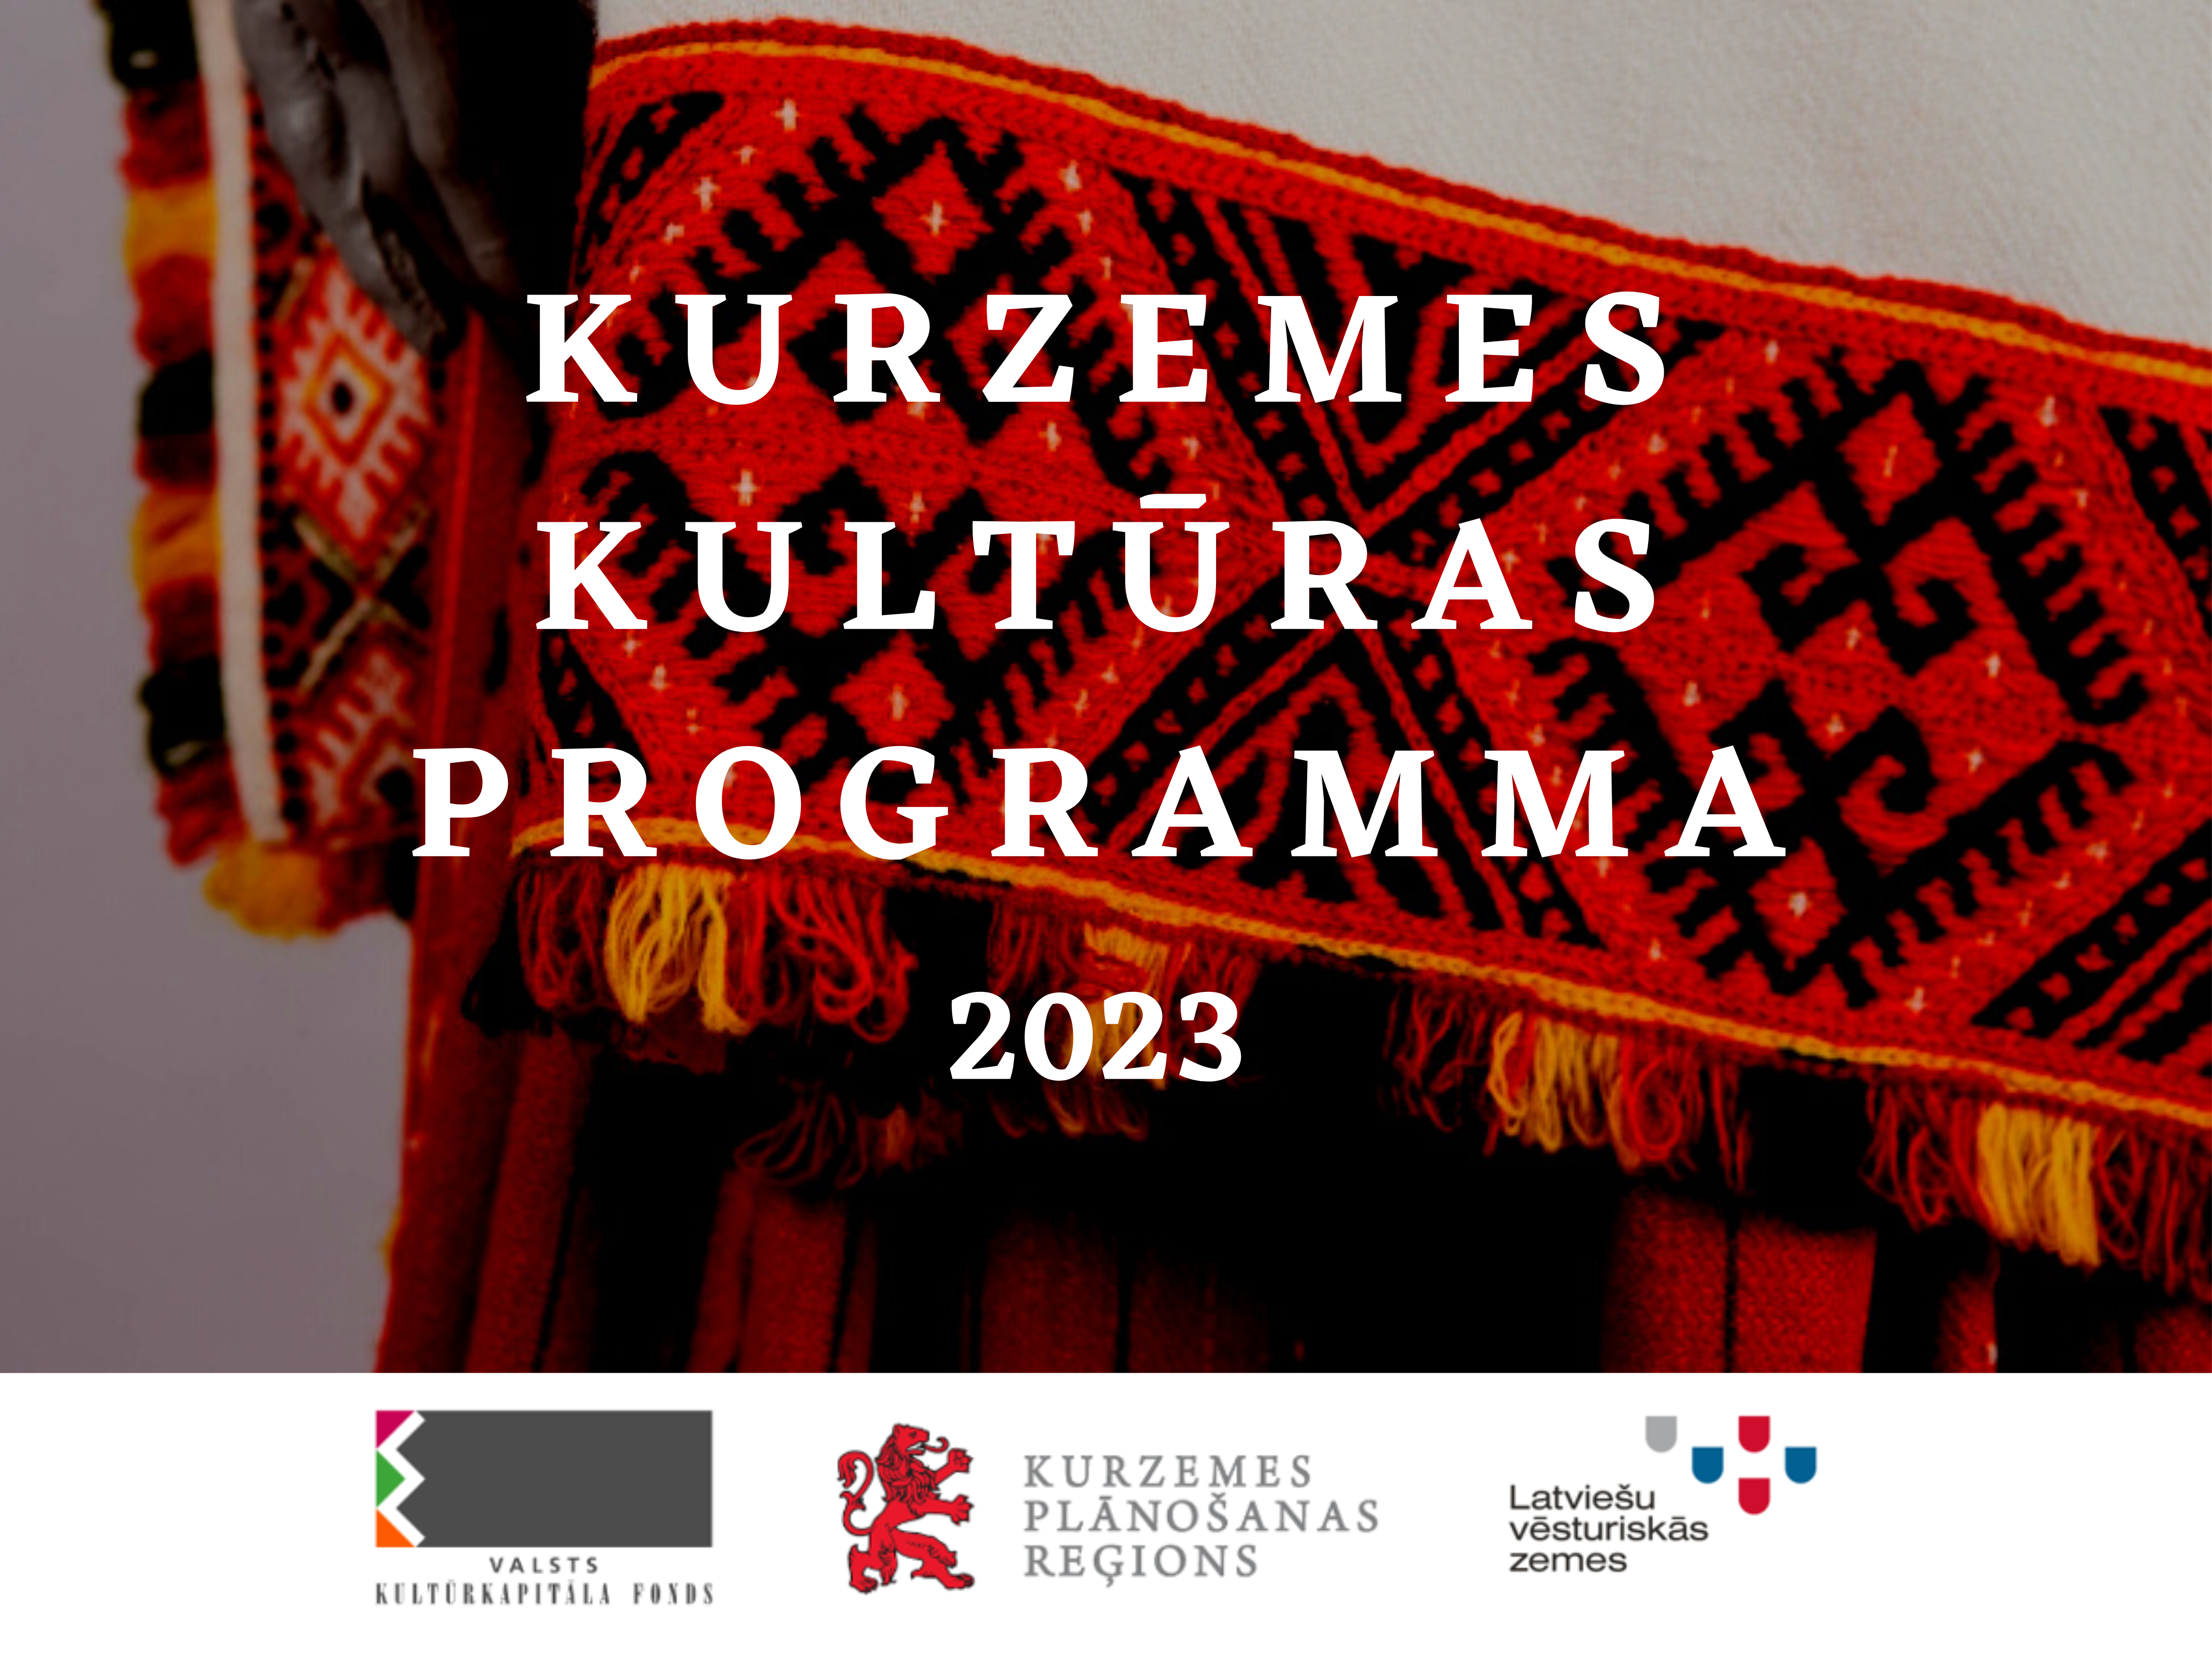 Kurzemes kultŗuas programmas 2023 ilustratīvais attēls: fonā redzams Kurzemei raksturīgs sieviešu tautastērps.